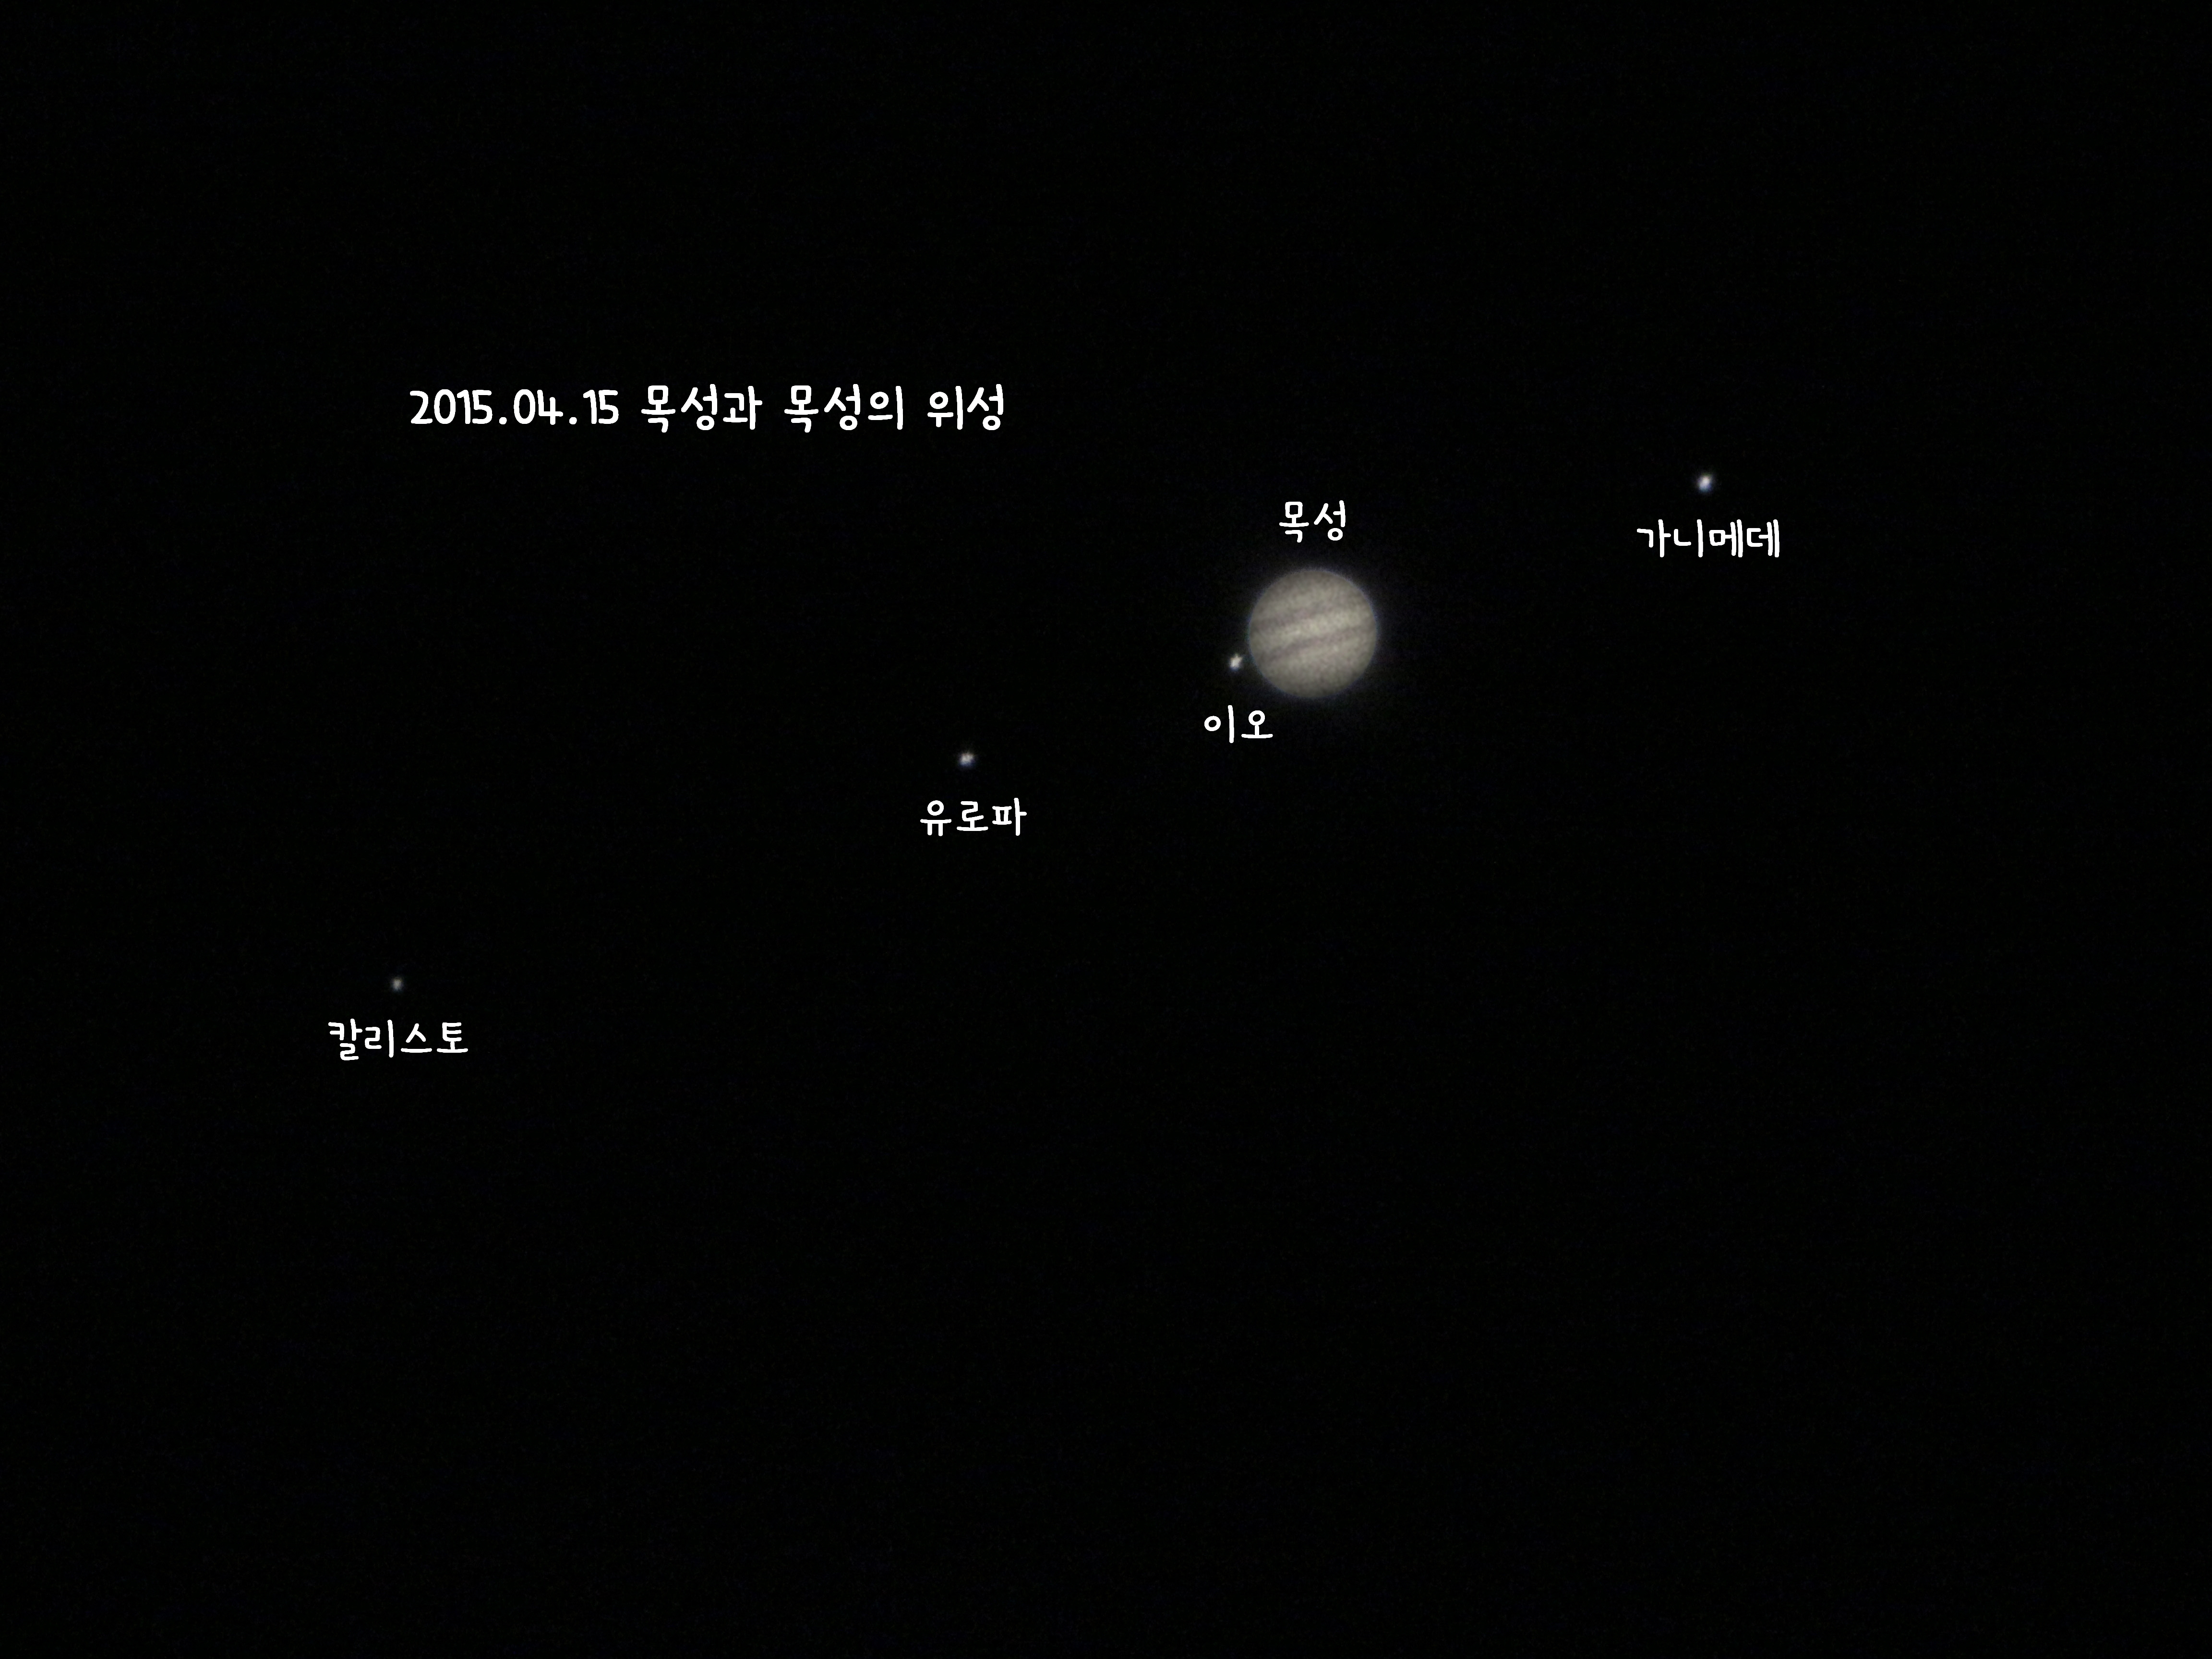 2015.04.15 목성과 목성의 위성.jpg